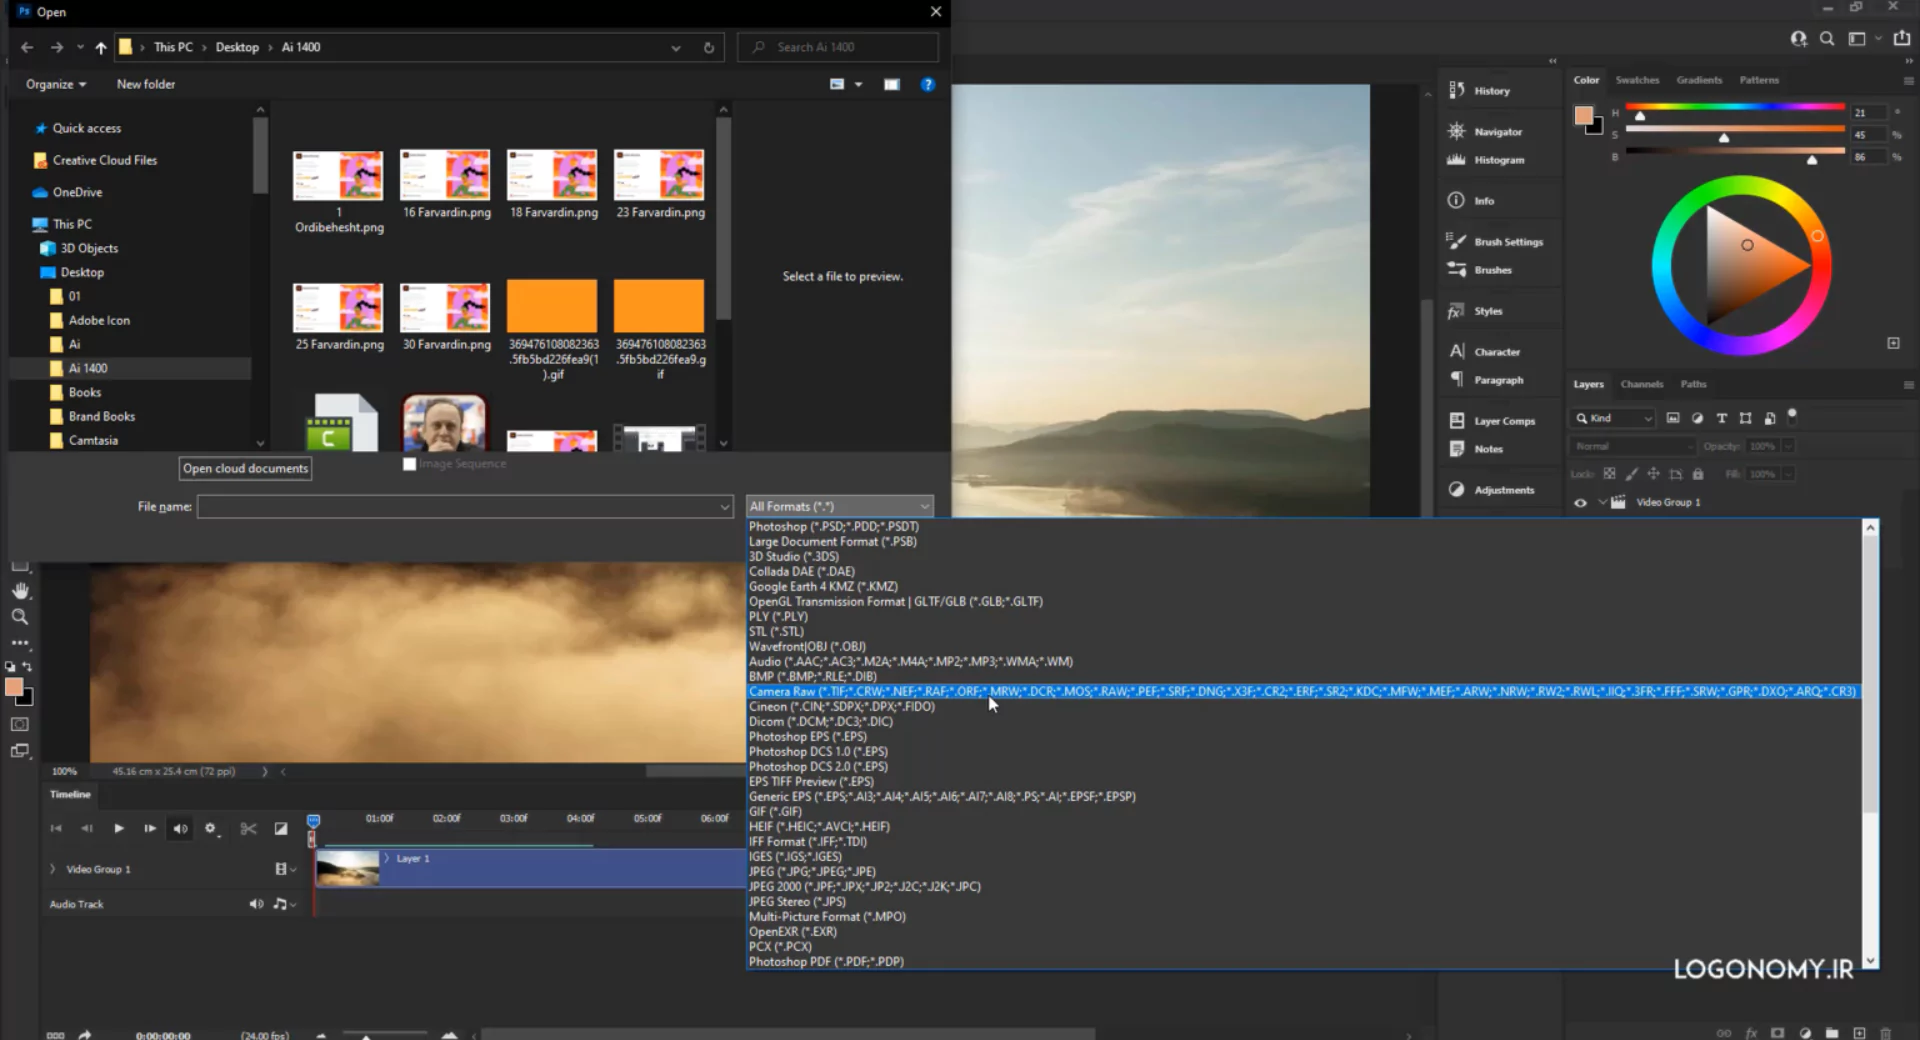 آموزش ساخت ویدئو یا تصاویر متحرک در برنامه فتوشاپ (Photoshop) با time line panel